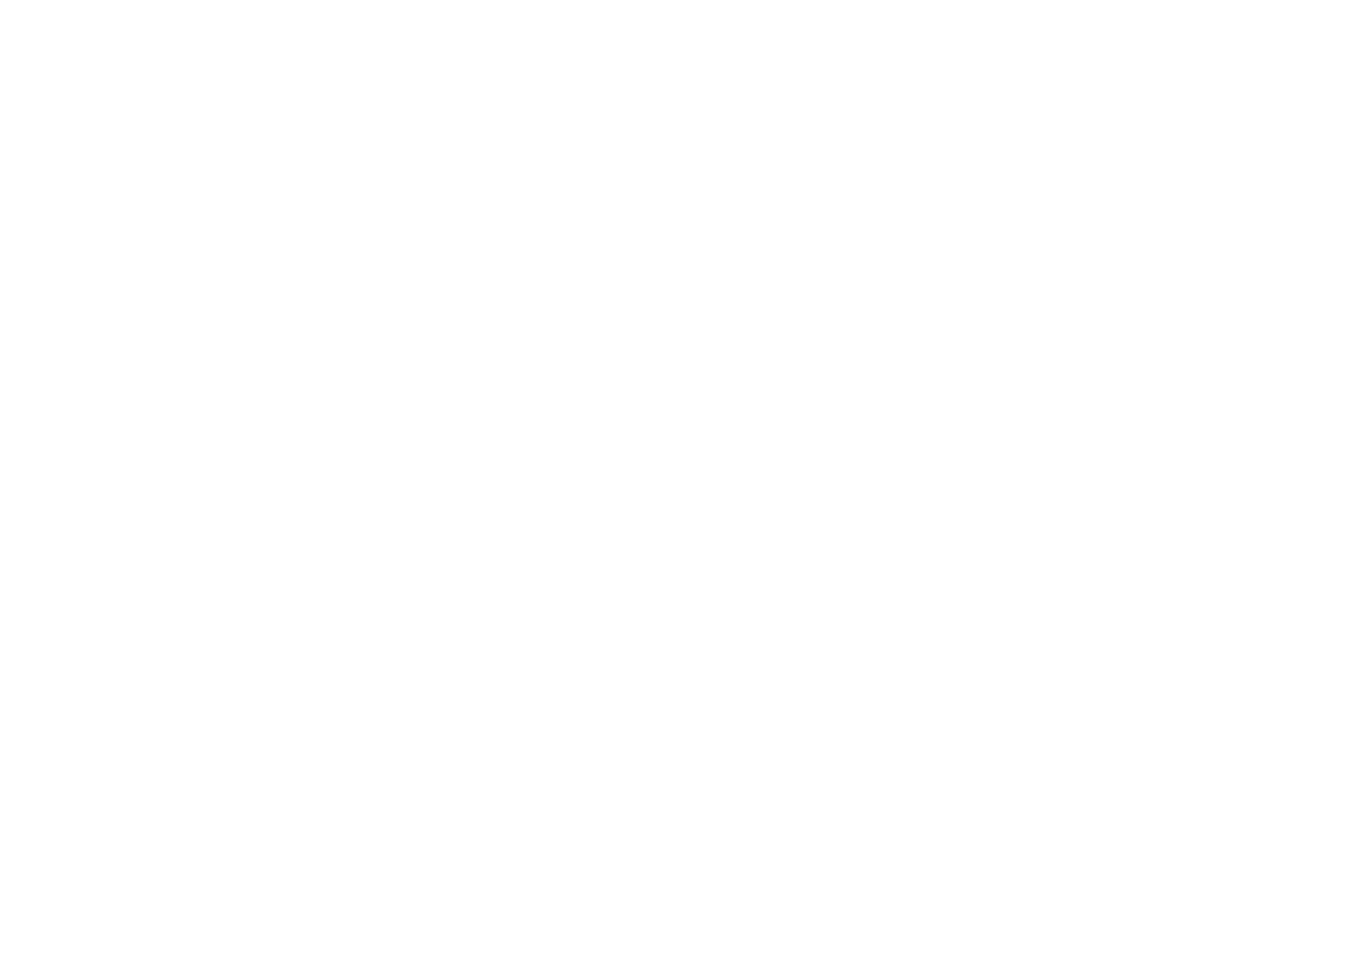 Zoom Workplace logosu